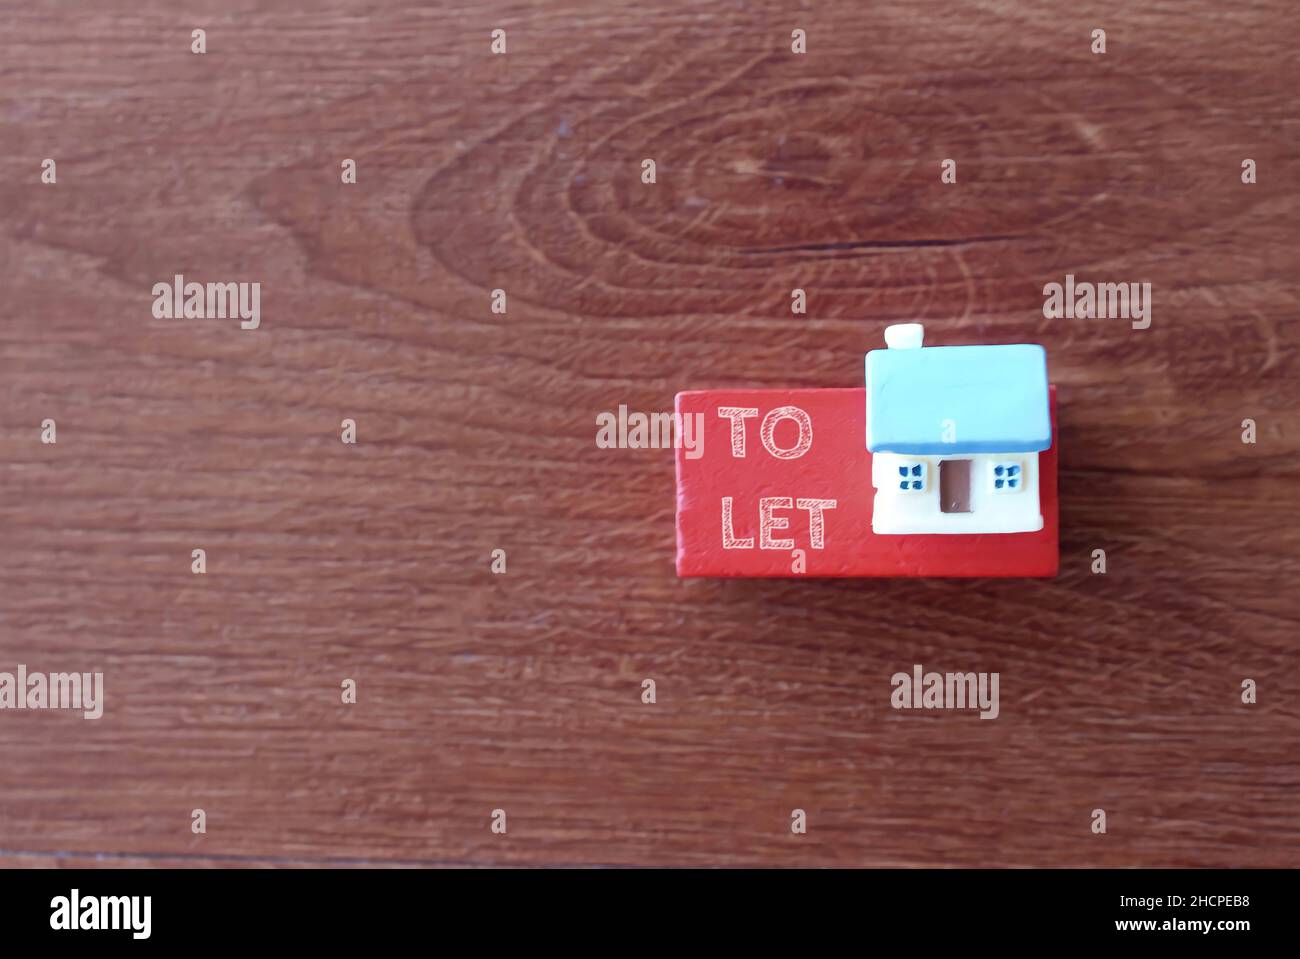 Image de mise au point sélective de la maison miniature et du texte À LAISSER.Concept immobilier et immobilier. Banque D'Images